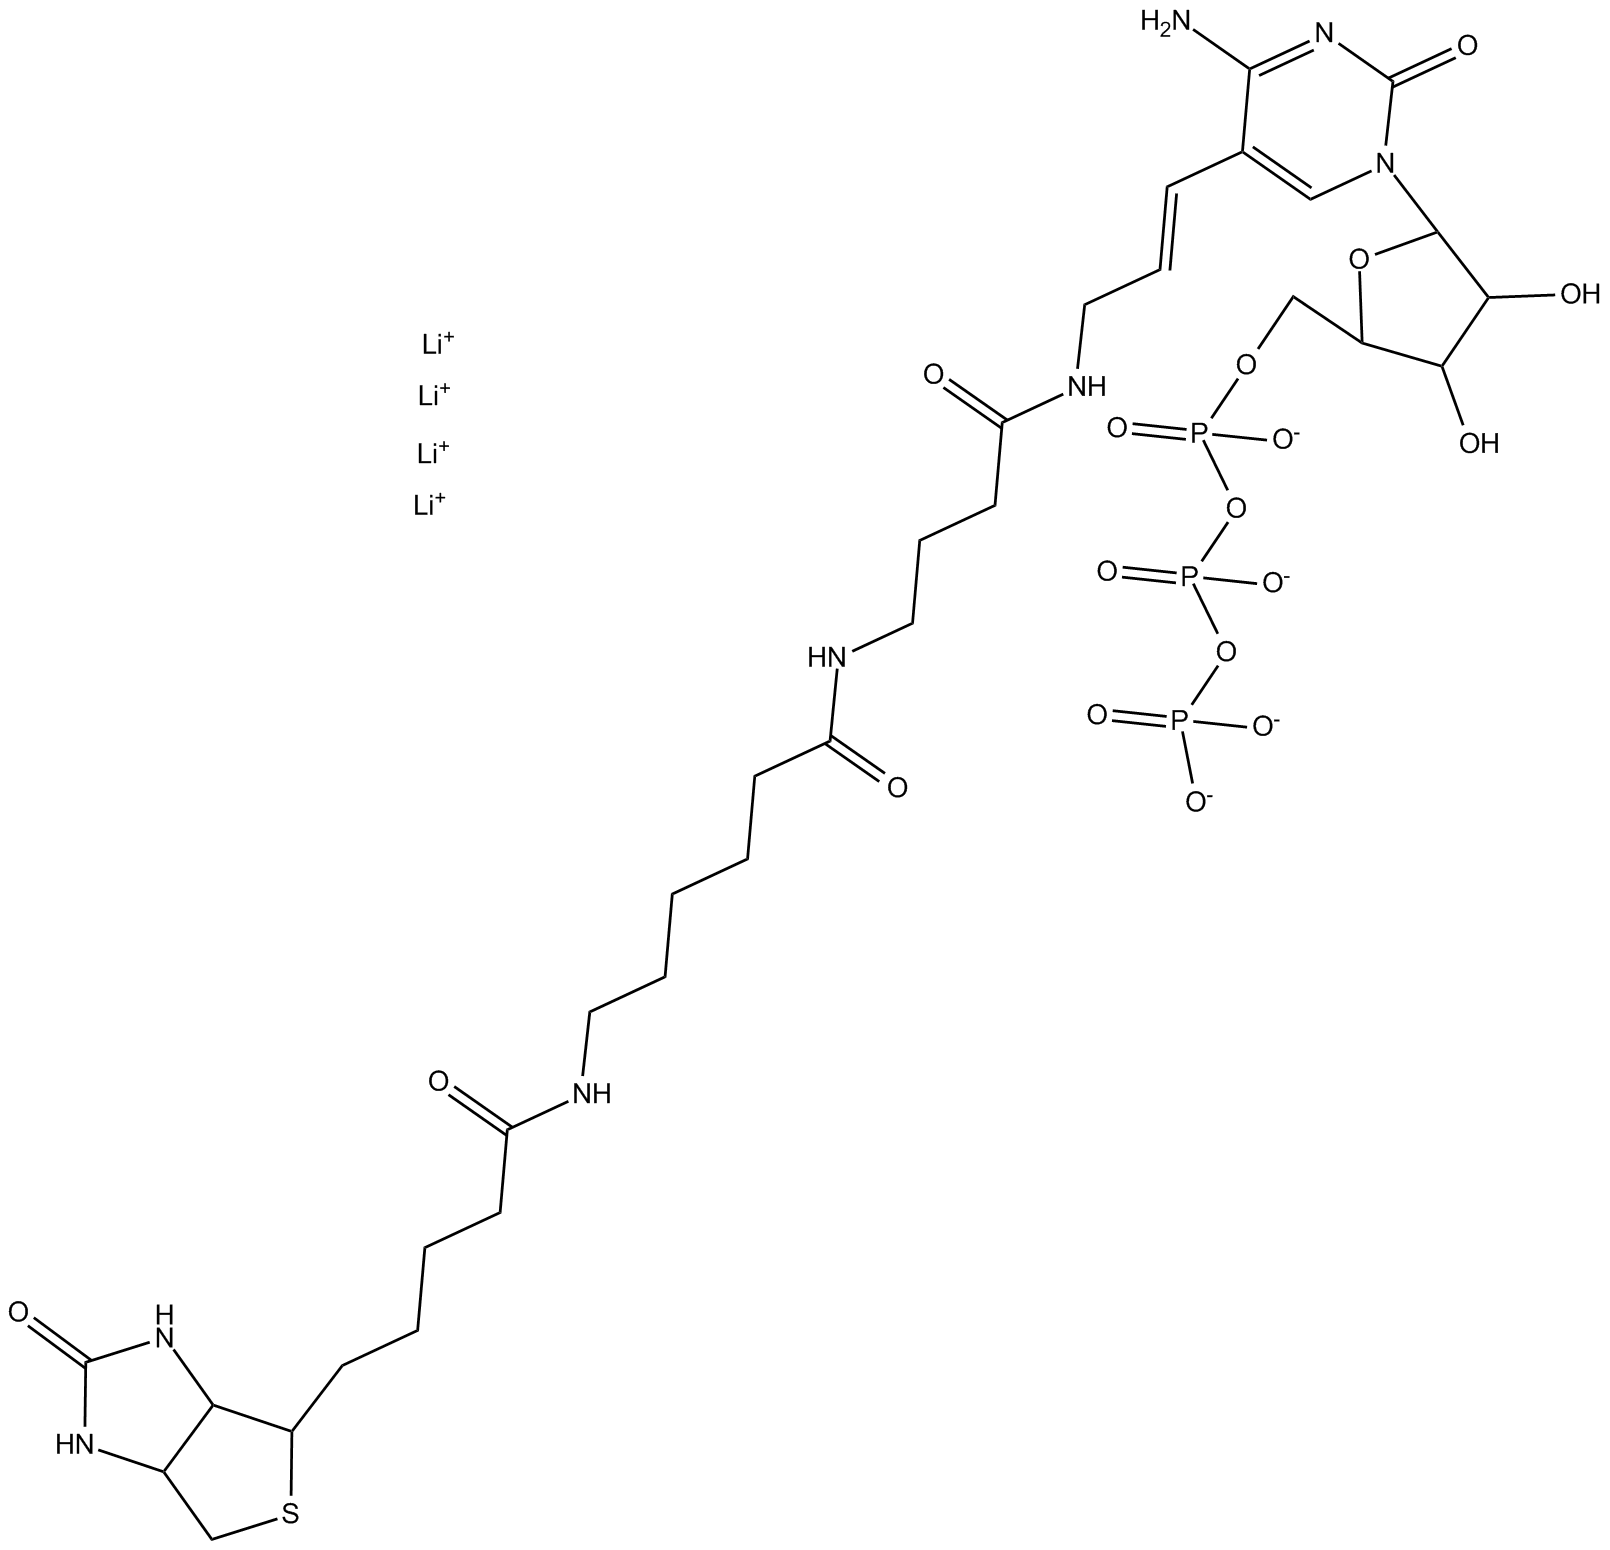 Biotin-16-CTP